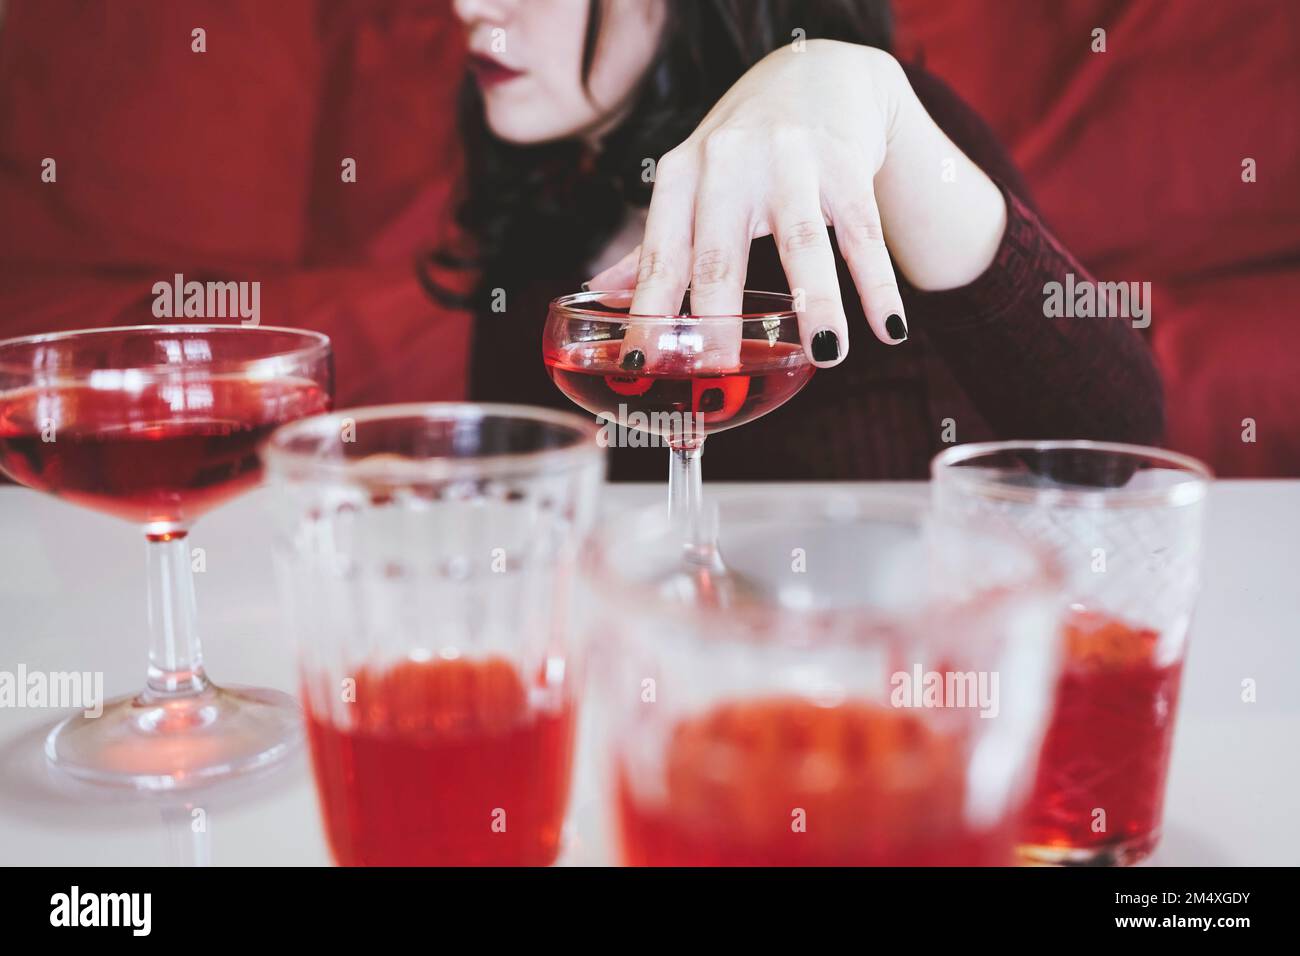 Eine Frau, die Finger in einen roten Alkohol taucht Stockfoto